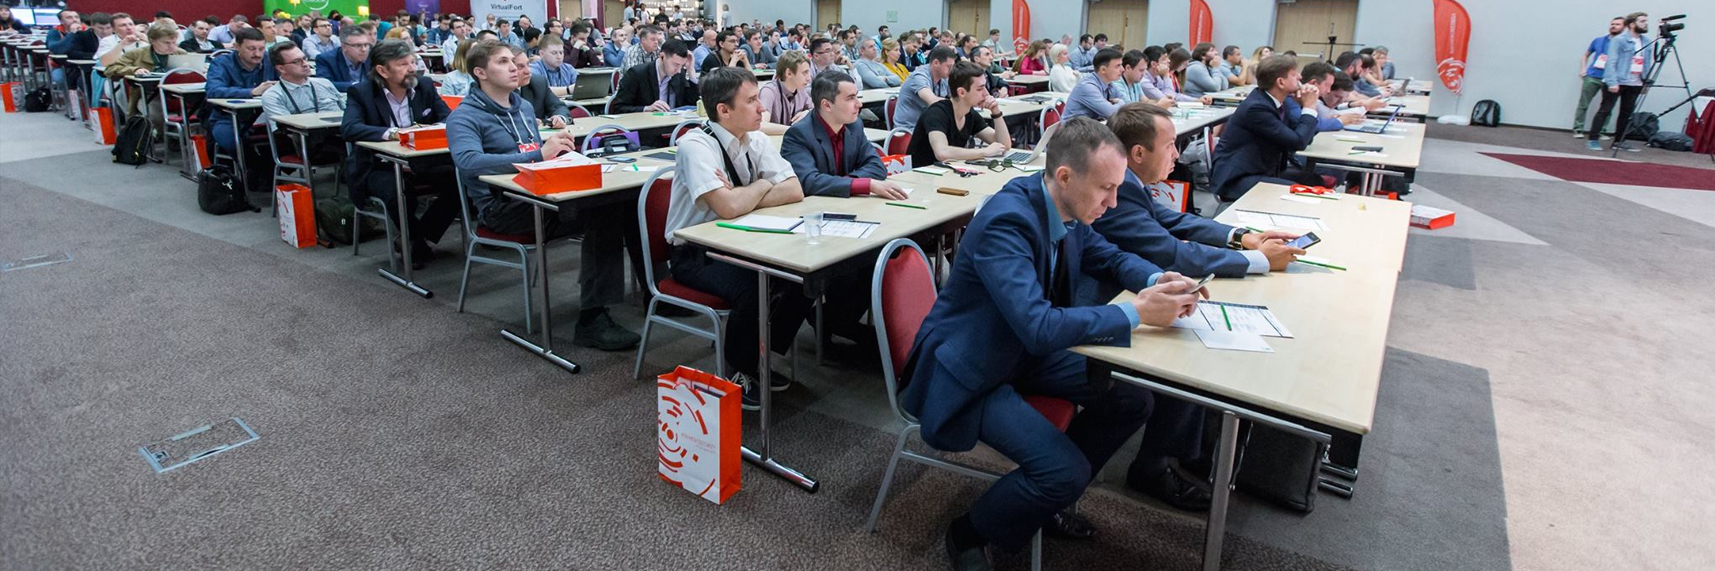 III Конференция Payment Security в Санкт-Петербурге